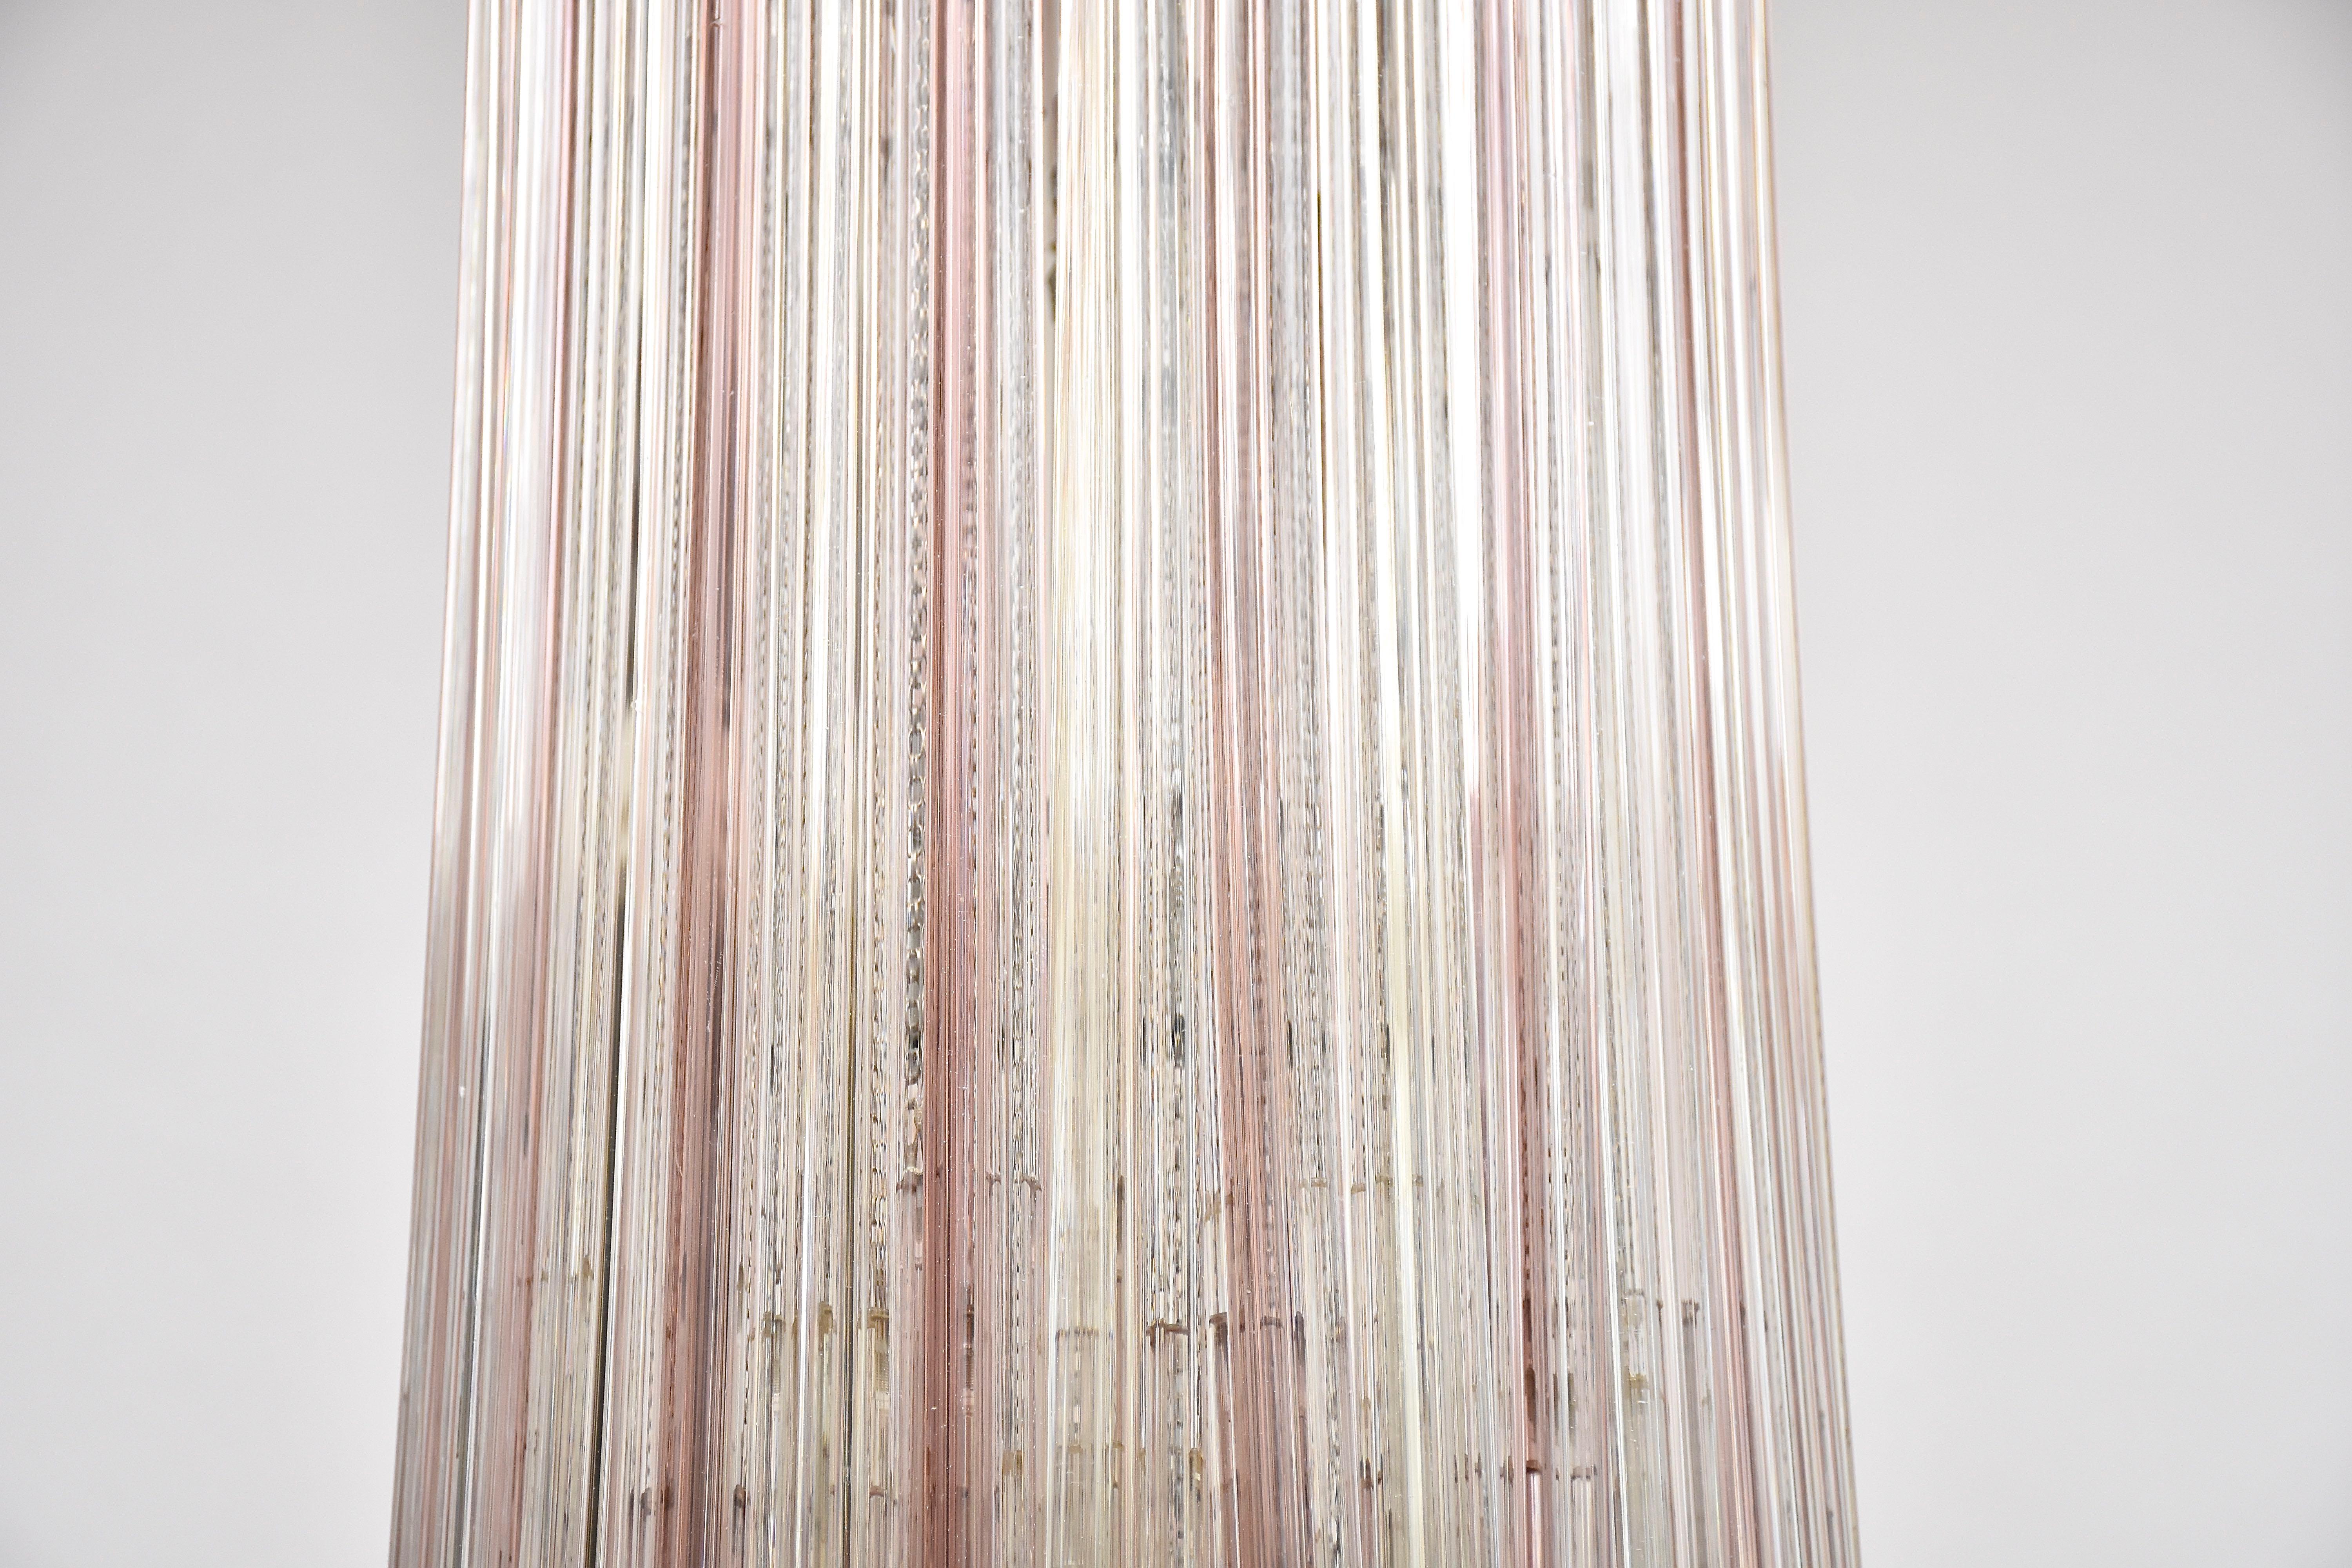 Ein sehr schöner Murano-Kronleuchter 'Trilobo' von Venini.
 Mit 5 Lichtern.
Verziert mit Anhängern aus transparentem und zartfarbigem Murano-Glas, die von Metallketten gehalten werden und an einer weiß lackierten Metallplatte hängen. 
Herkunftsort -